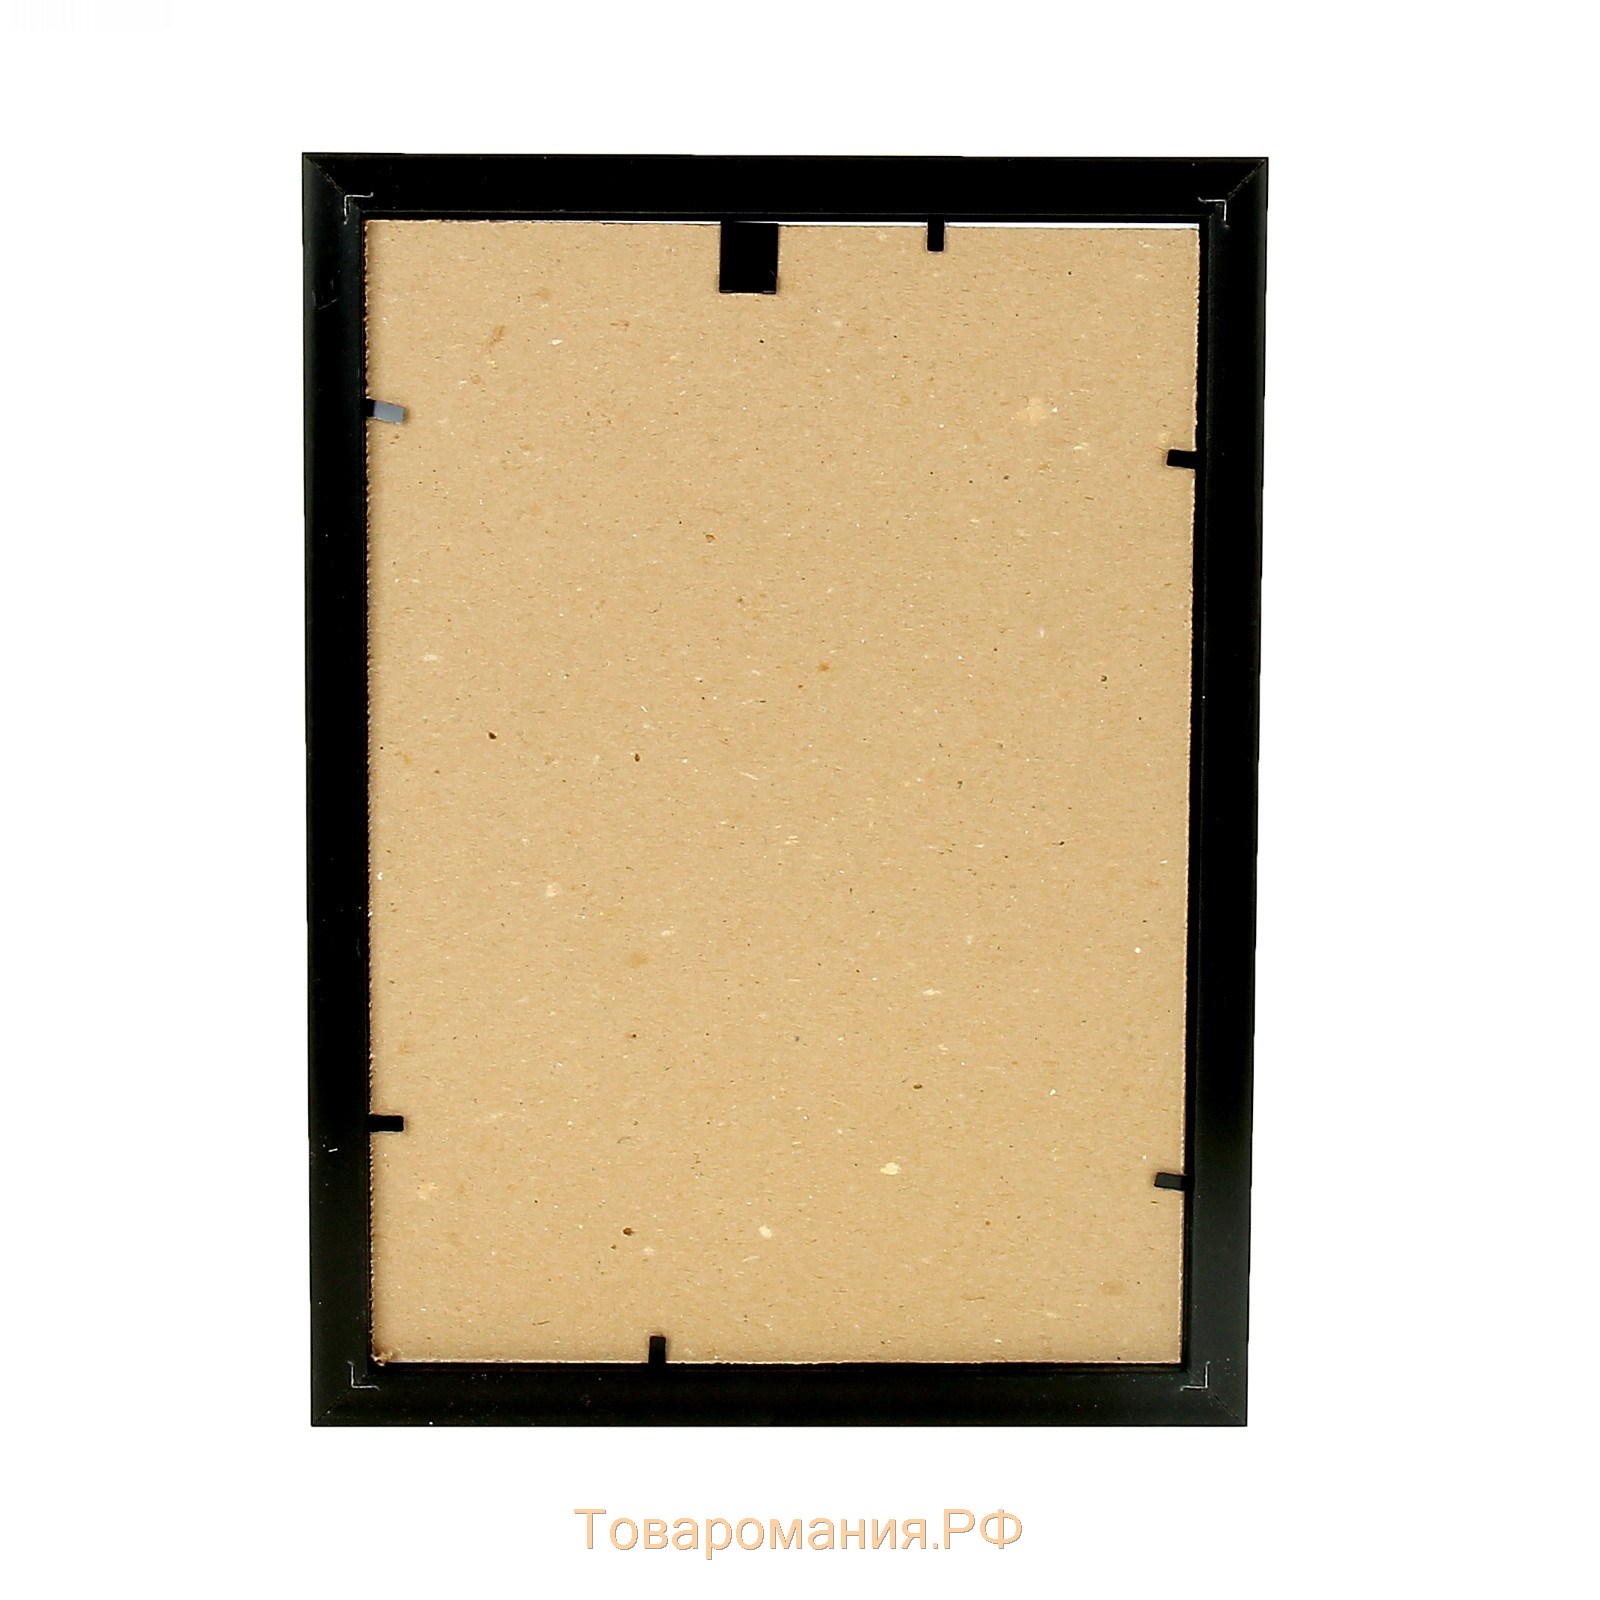 Фоторамка формат А4 21х30 см (282Р) темный орех с золотом (пластиковый экран)